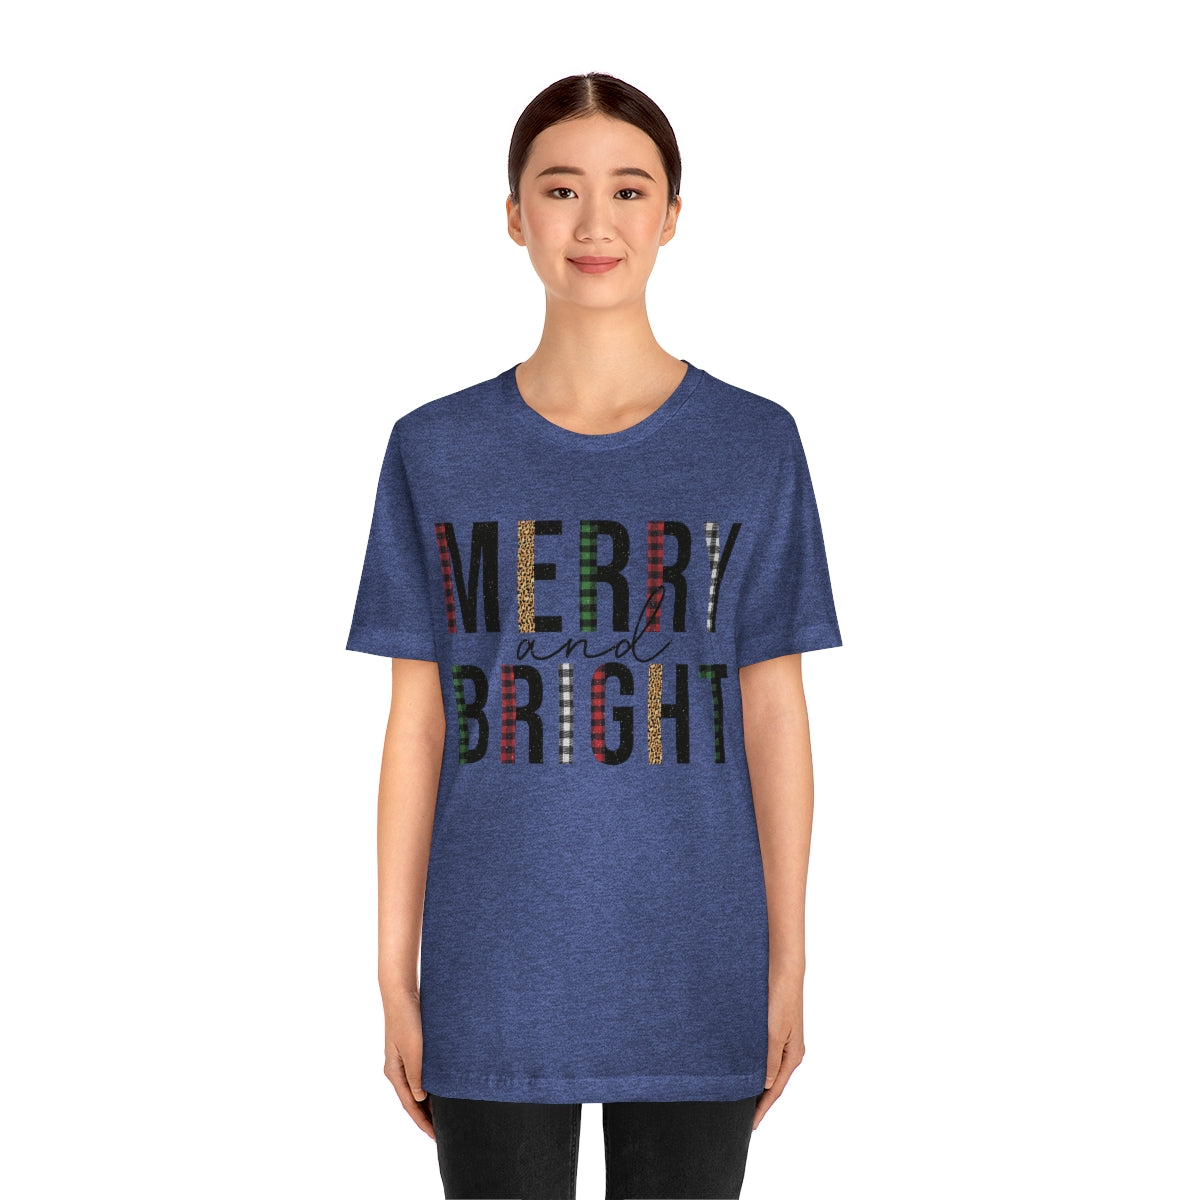 Merry & Bright Plaid Design Christmas Shirt